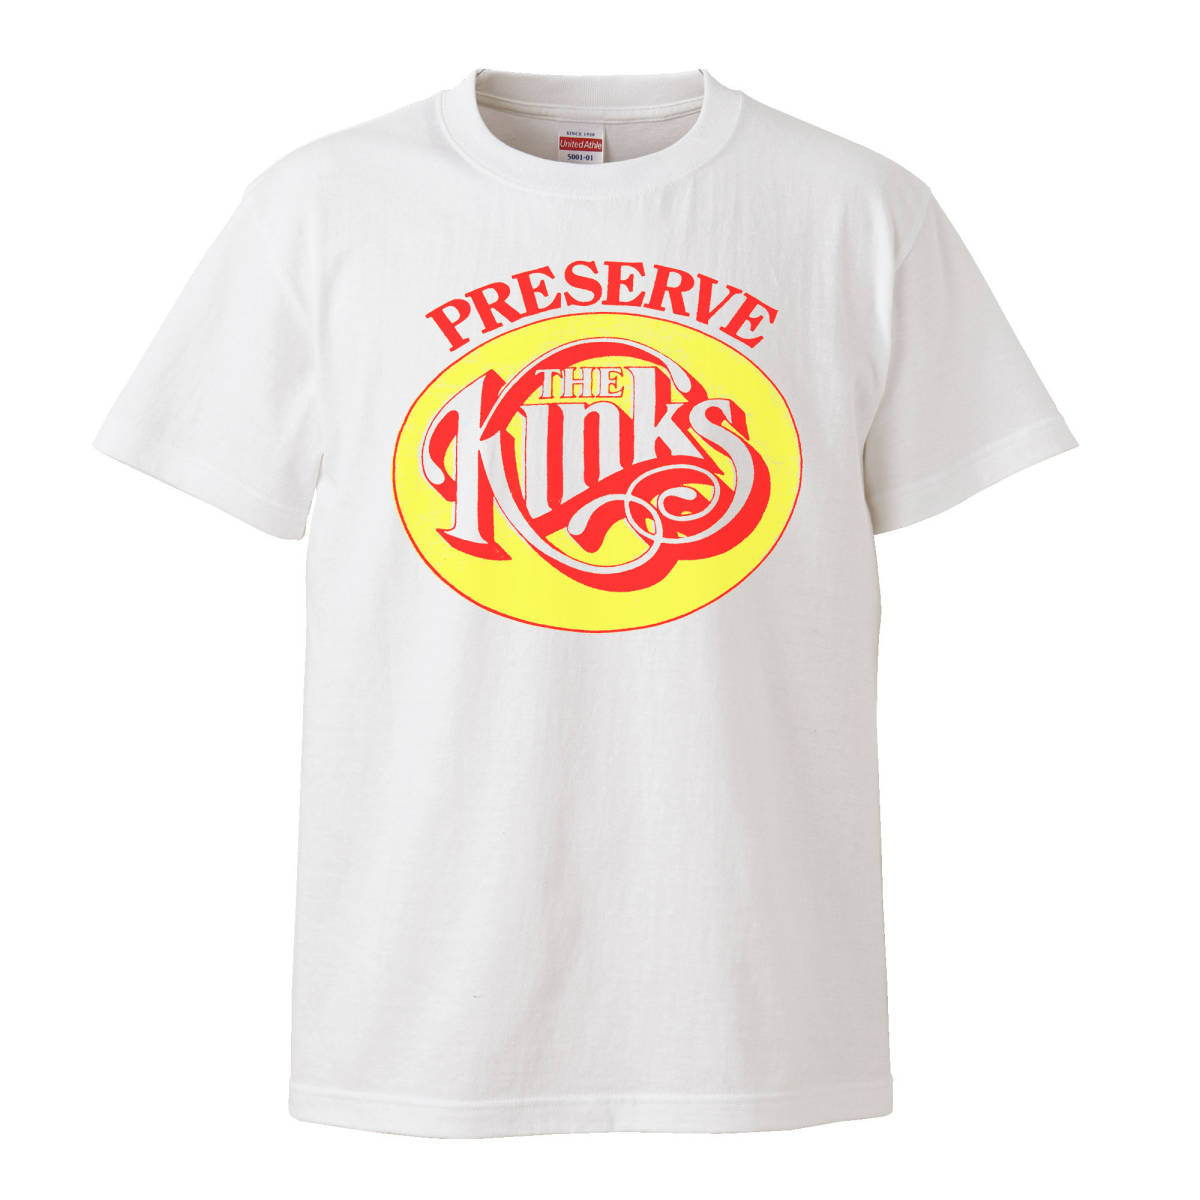 【XLサイズ 白Tシャツ】The Kinks キンクス Preservation Act 1 サイケデリック UKロック LP CD レコード ビンテージ MODS モッズ 60s 70s_画像1